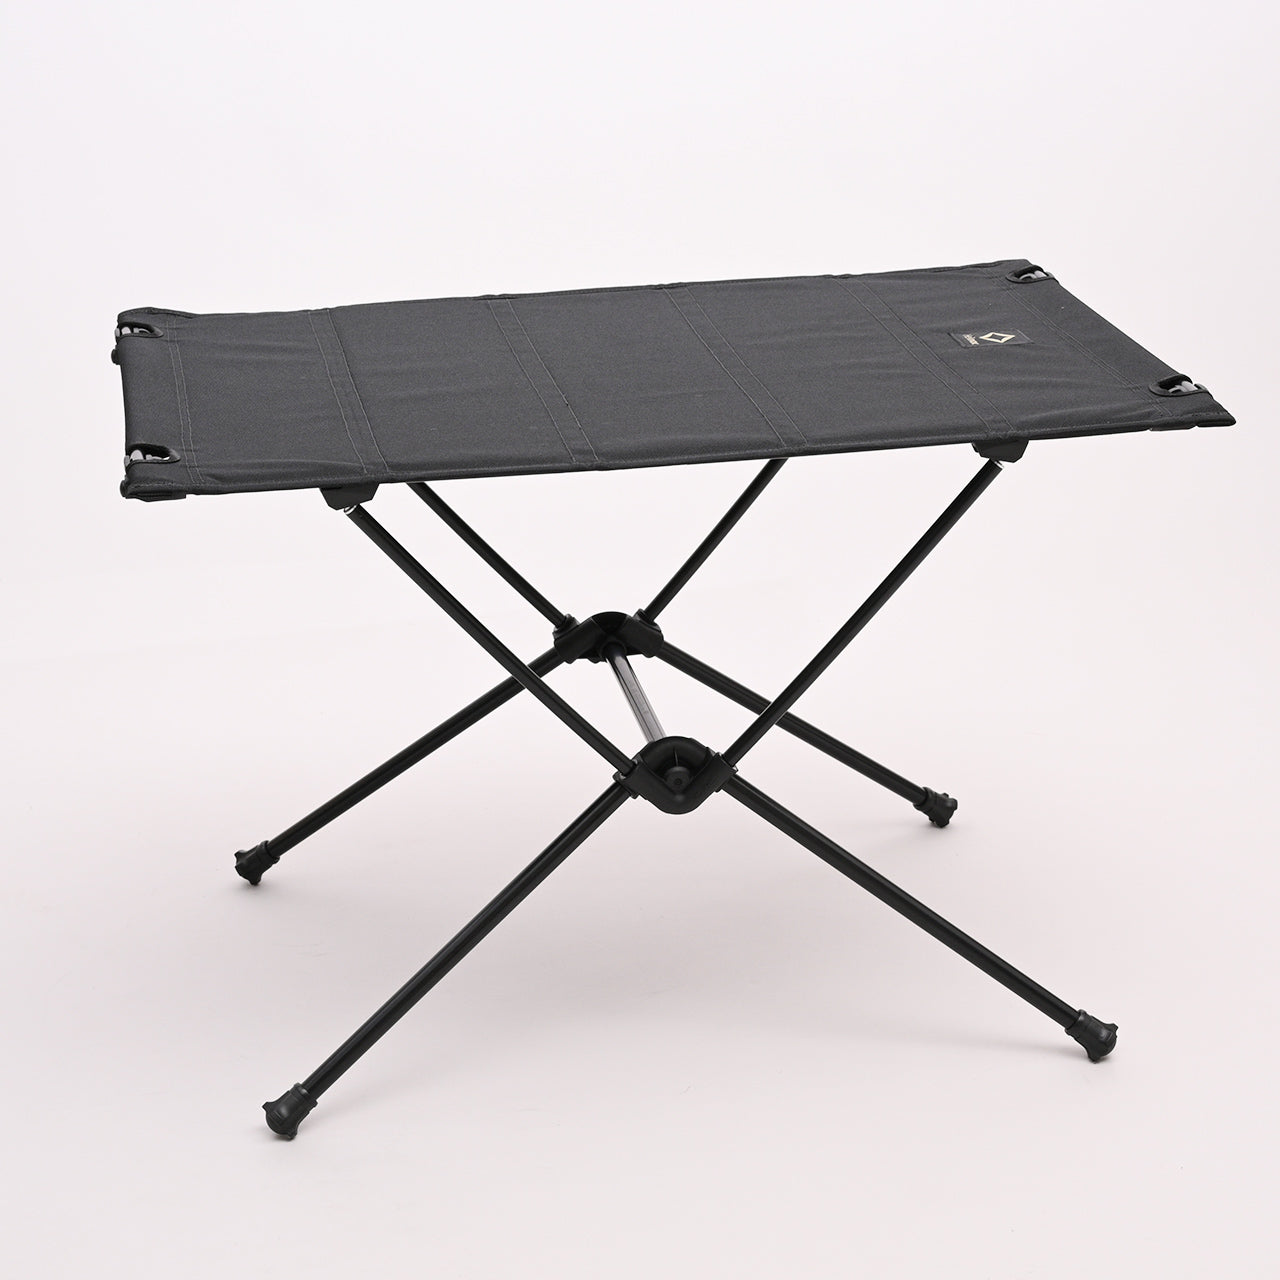 Helinox ヘリノックス タクティカル テーブル 折りたたみ式 机 Tactical Table Mサイズ 19755011001007 19755011017007【送料無料】